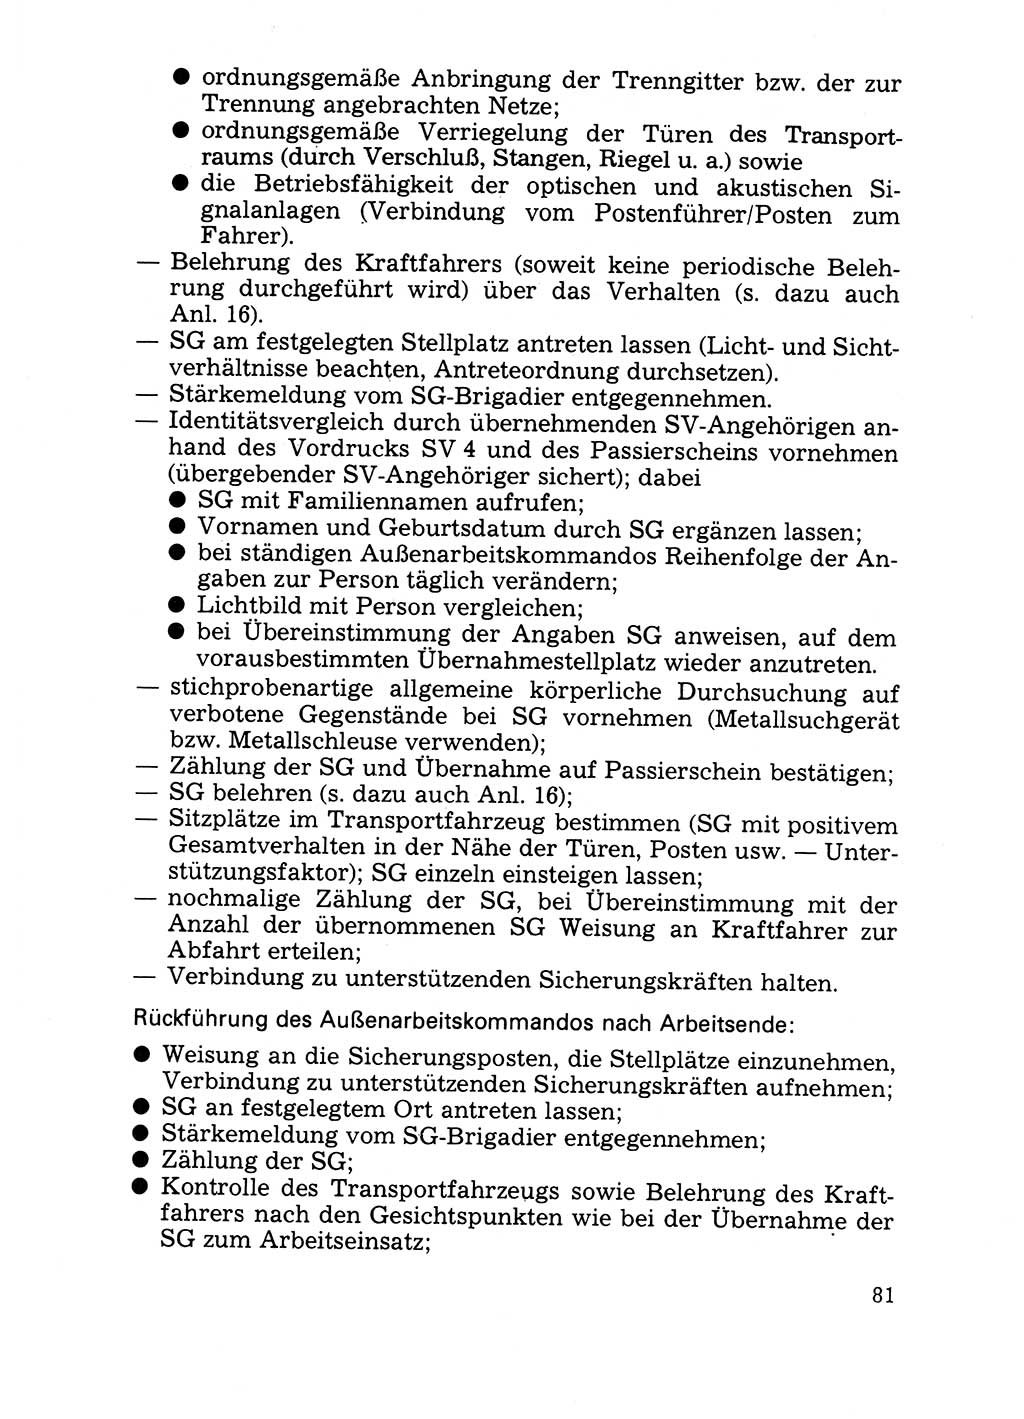 Handbuch für operative Dienste, Abteilung Strafvollzug (SV) [Ministerium des Innern (MdI) Deutsche Demokratische Republik (DDR)] 1981, Seite 81 (Hb. op. D. Abt. SV MdI DDR 1981, S. 81)